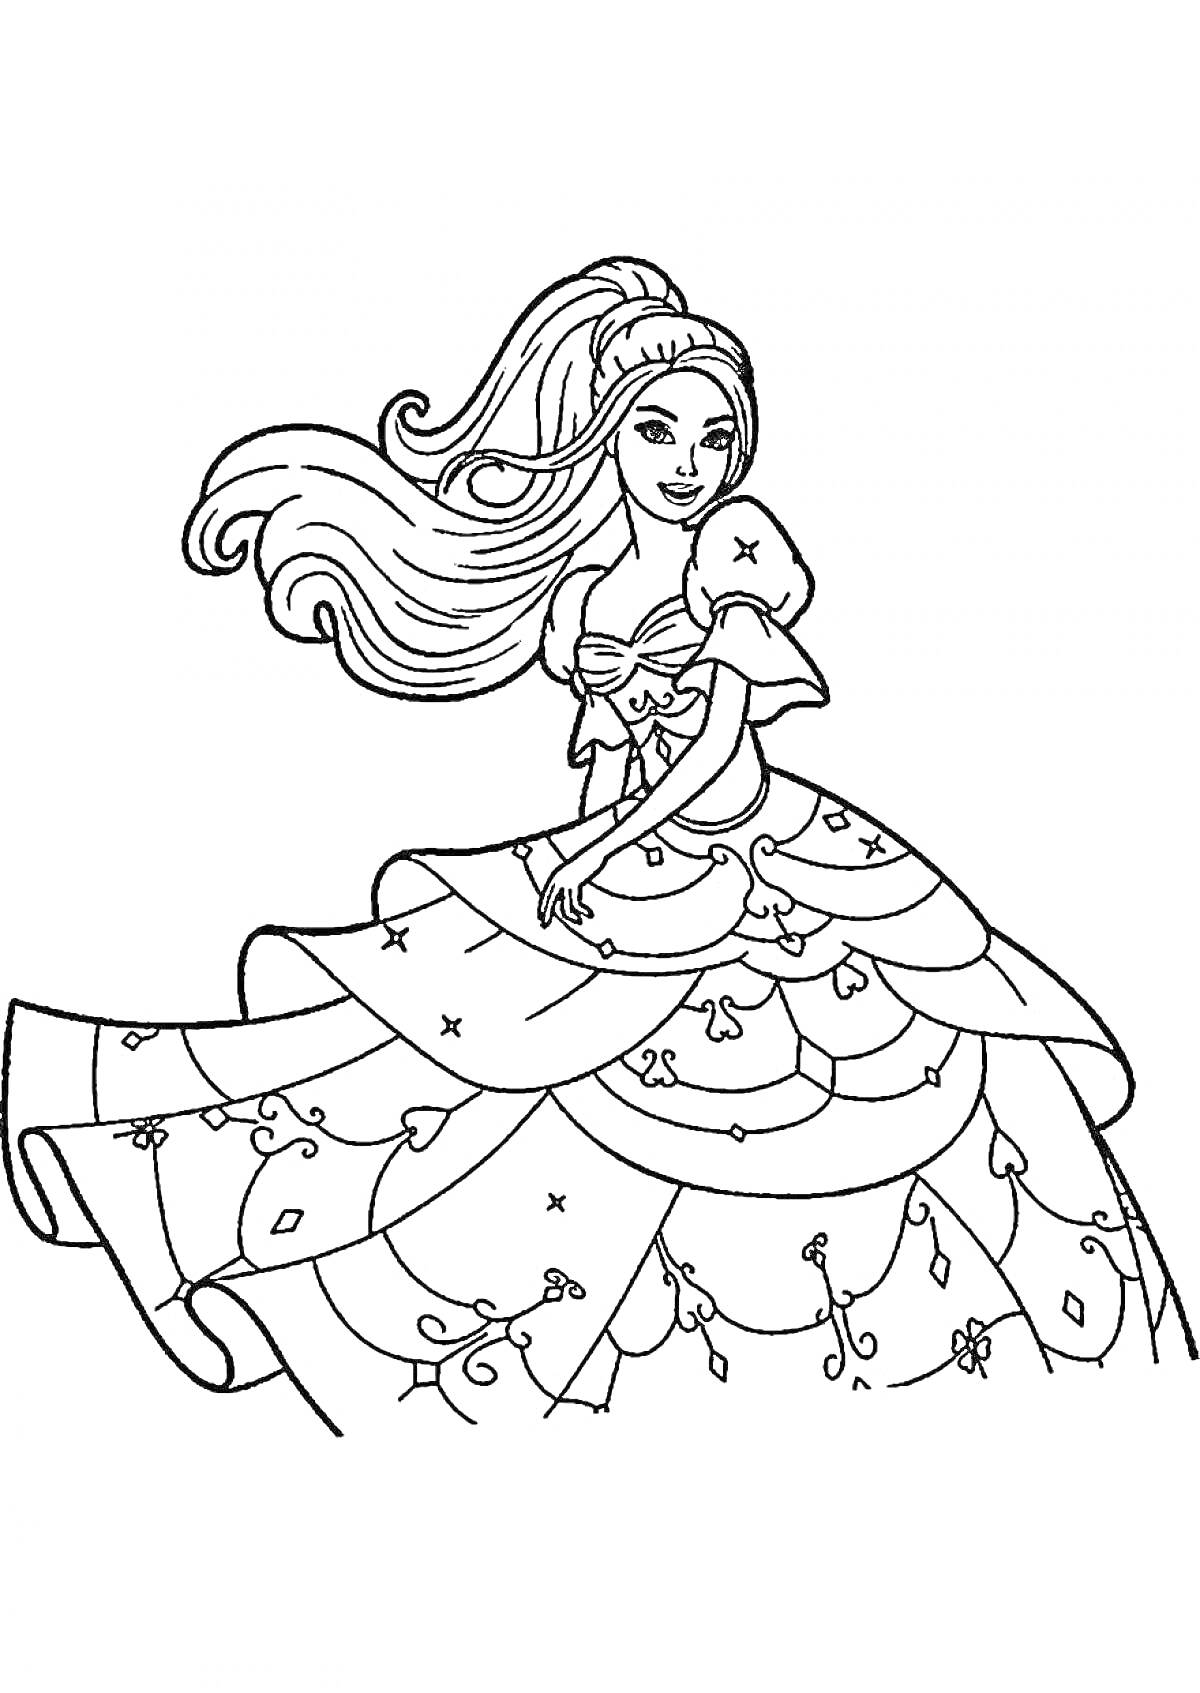 Раскраска Принцесса с длинными распущенными волосами в пышном платье с узорами